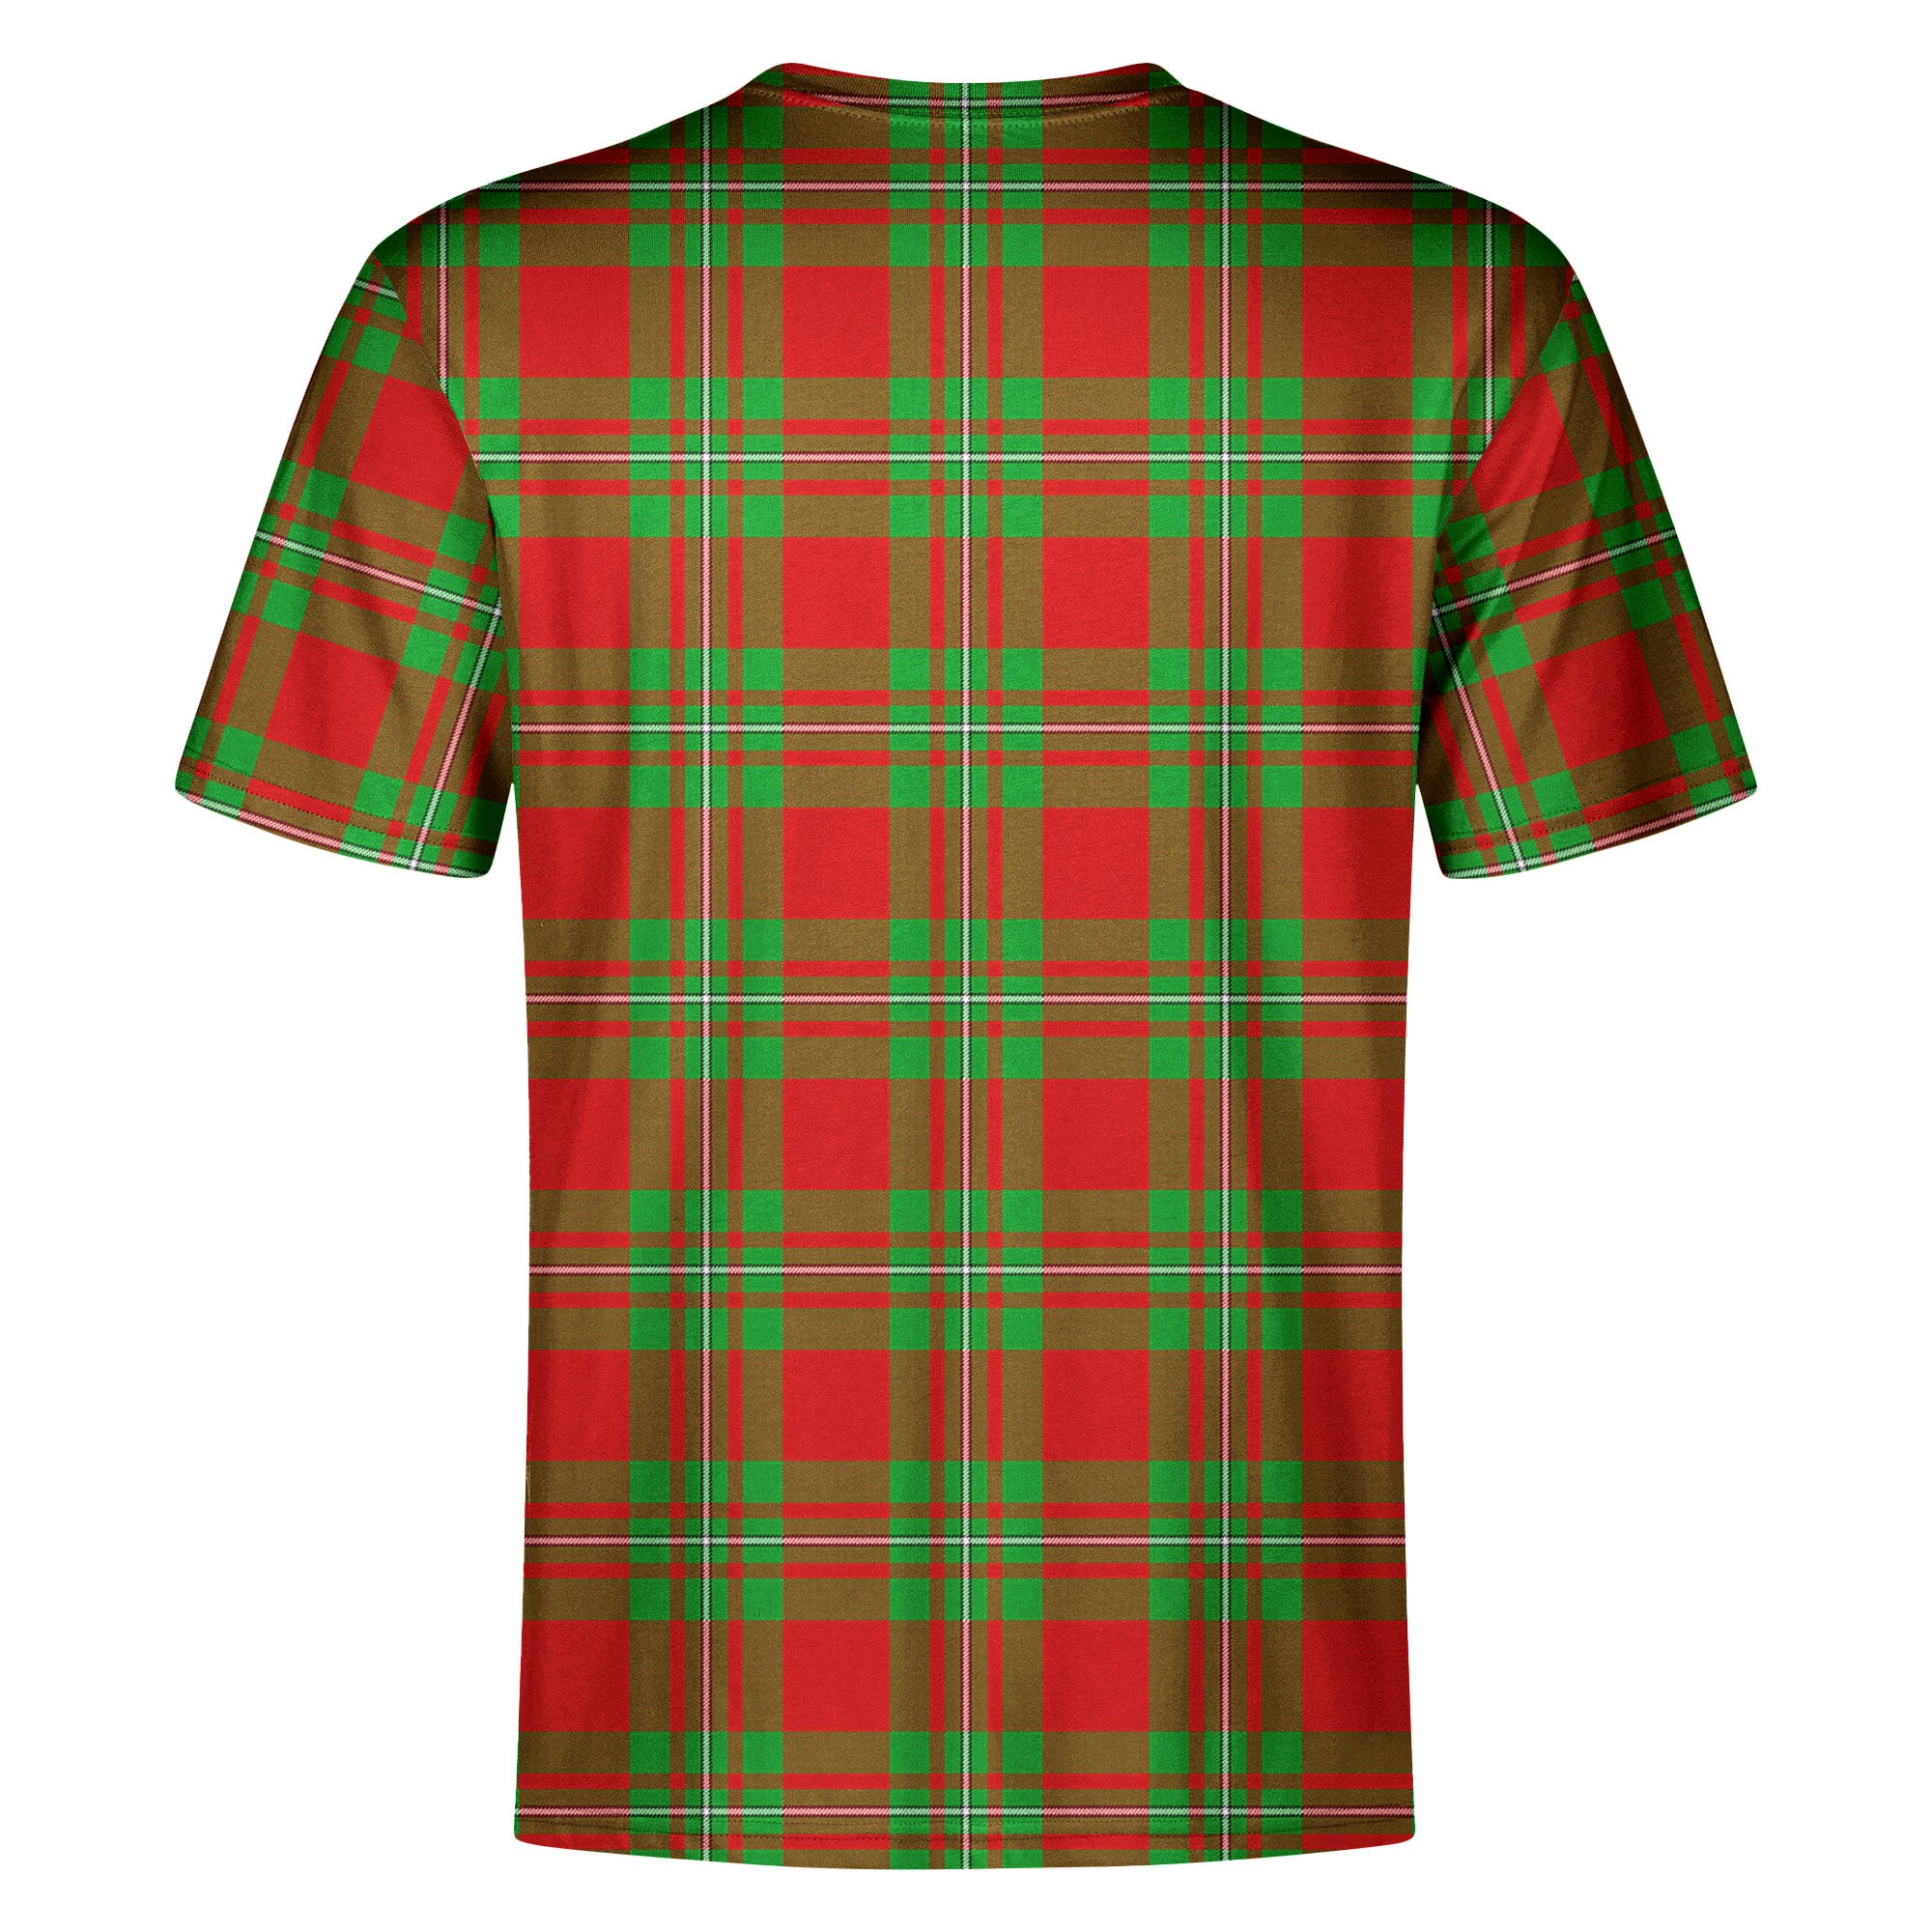 Callander Tartan Crest T-shirt